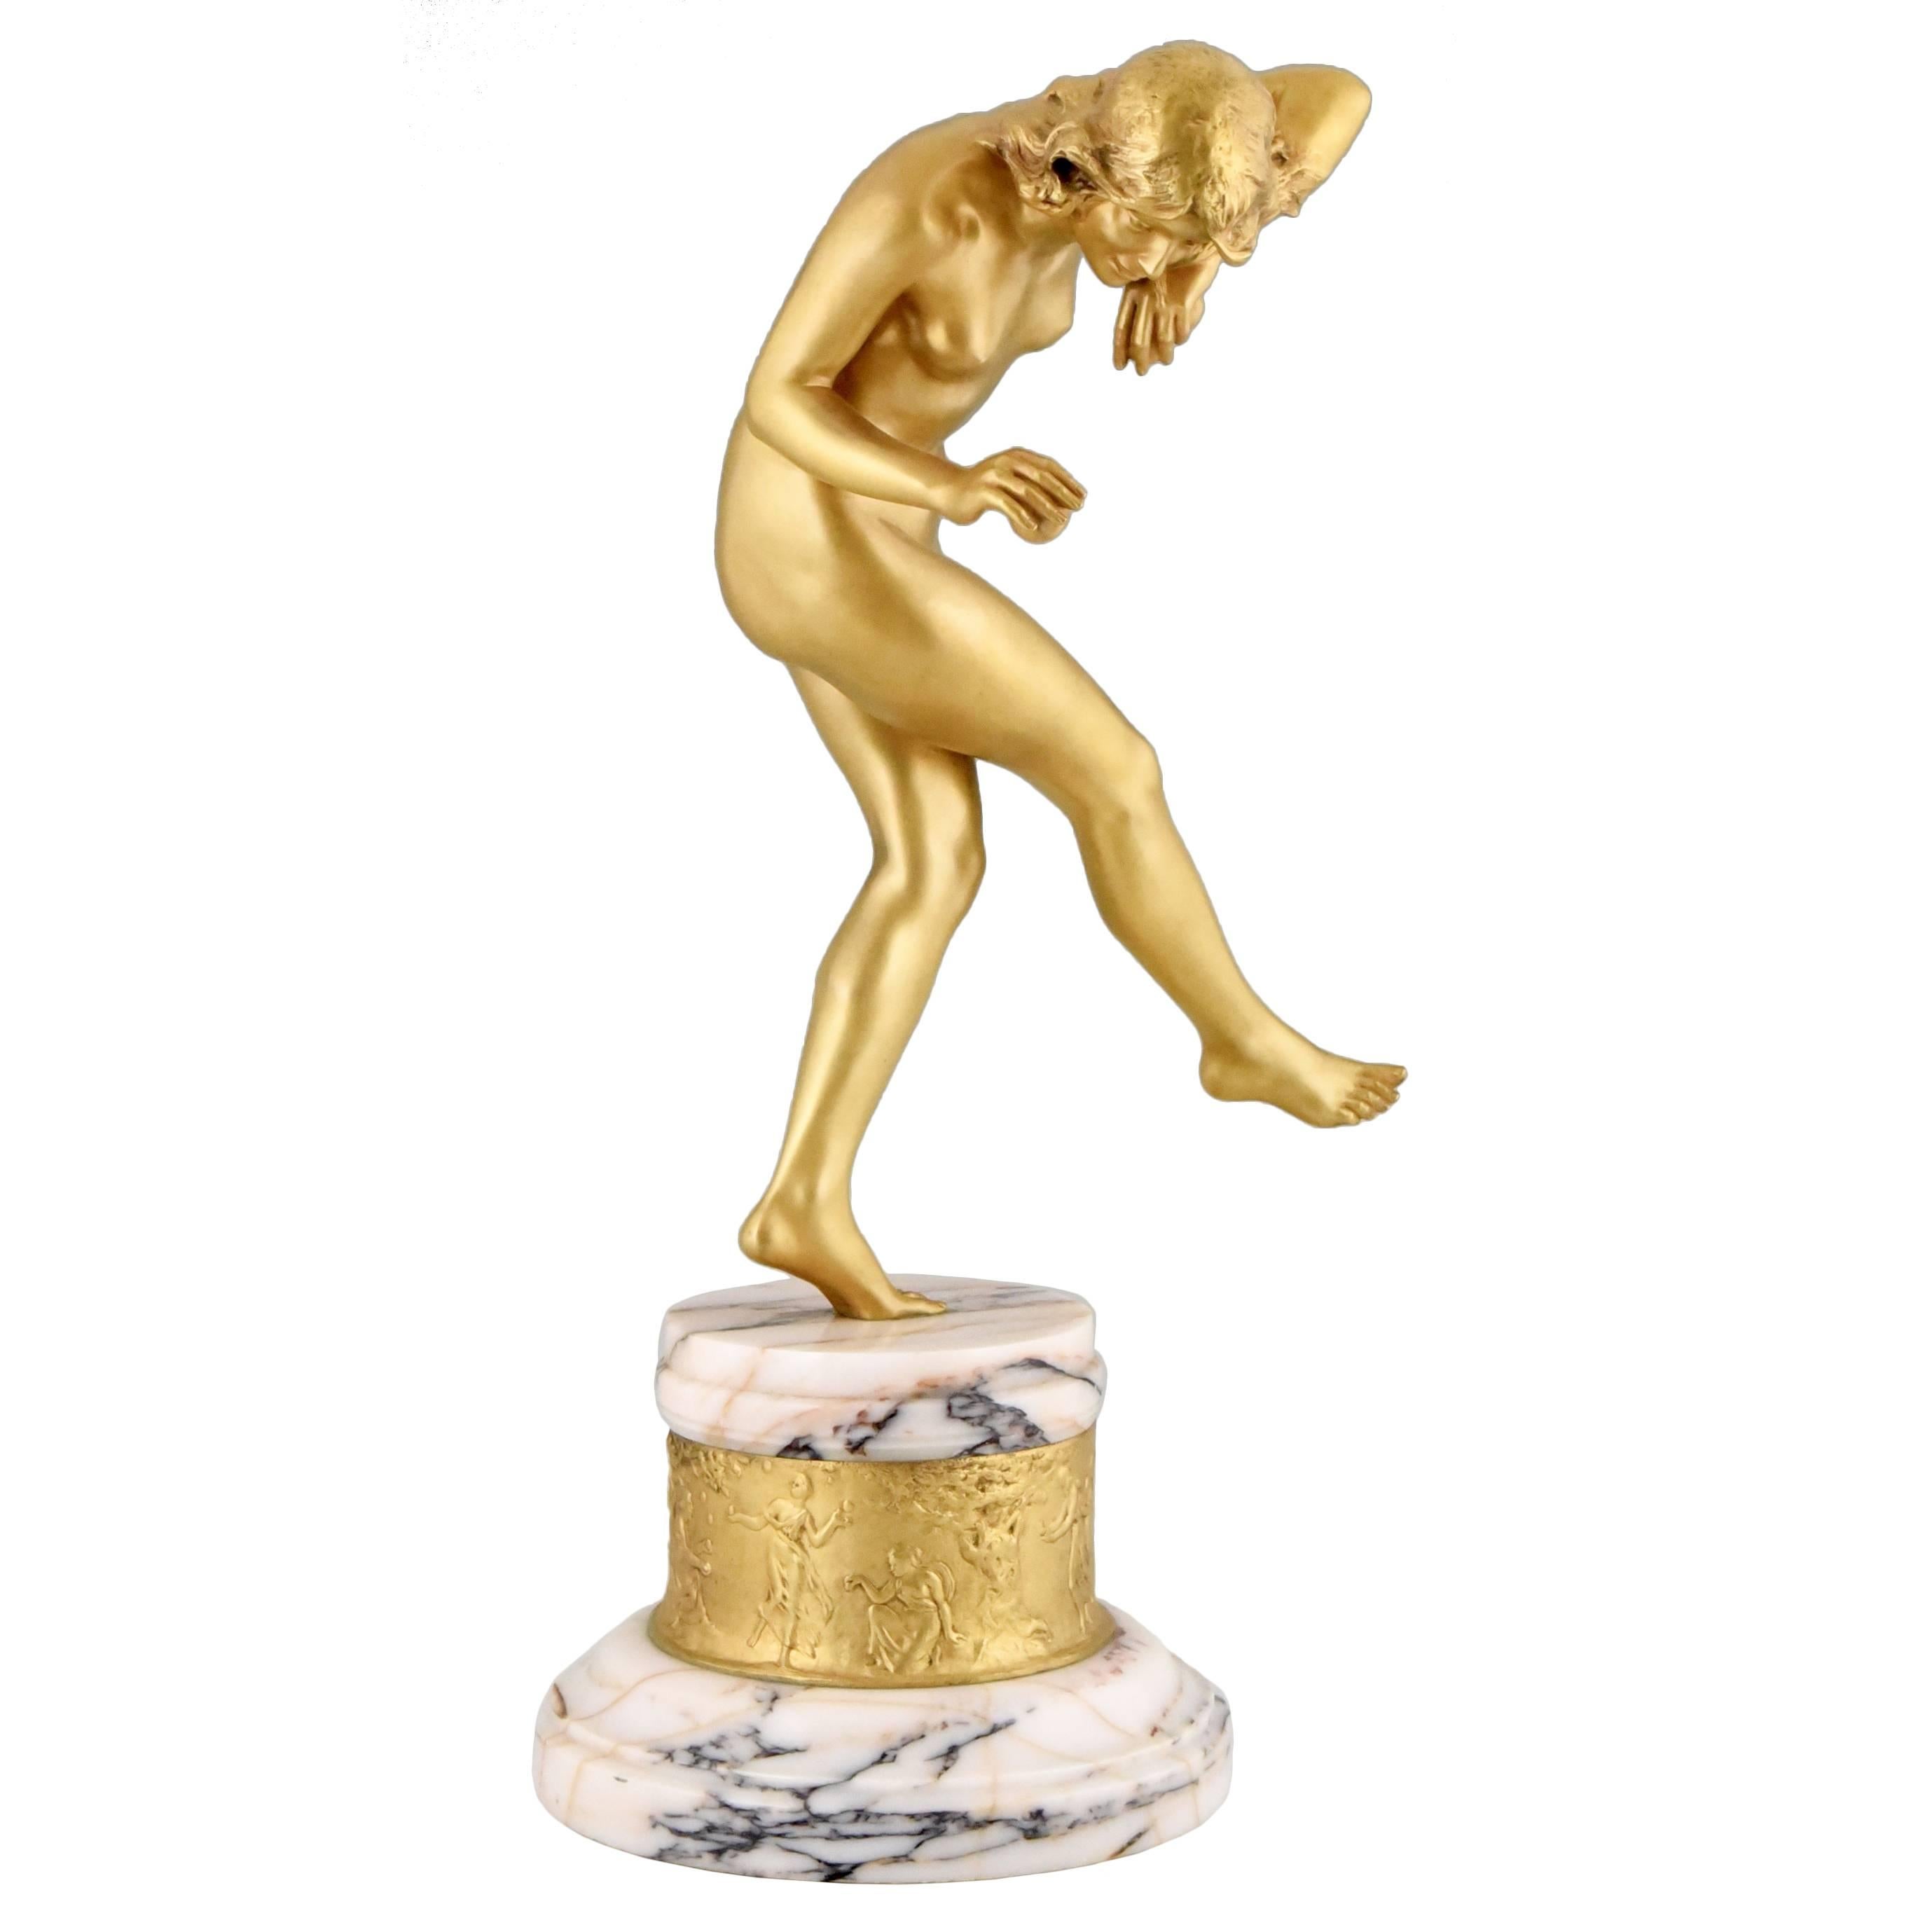 French Art Nouveau bronze sculpture nude dancer by Louis Marie Jules Delapchier